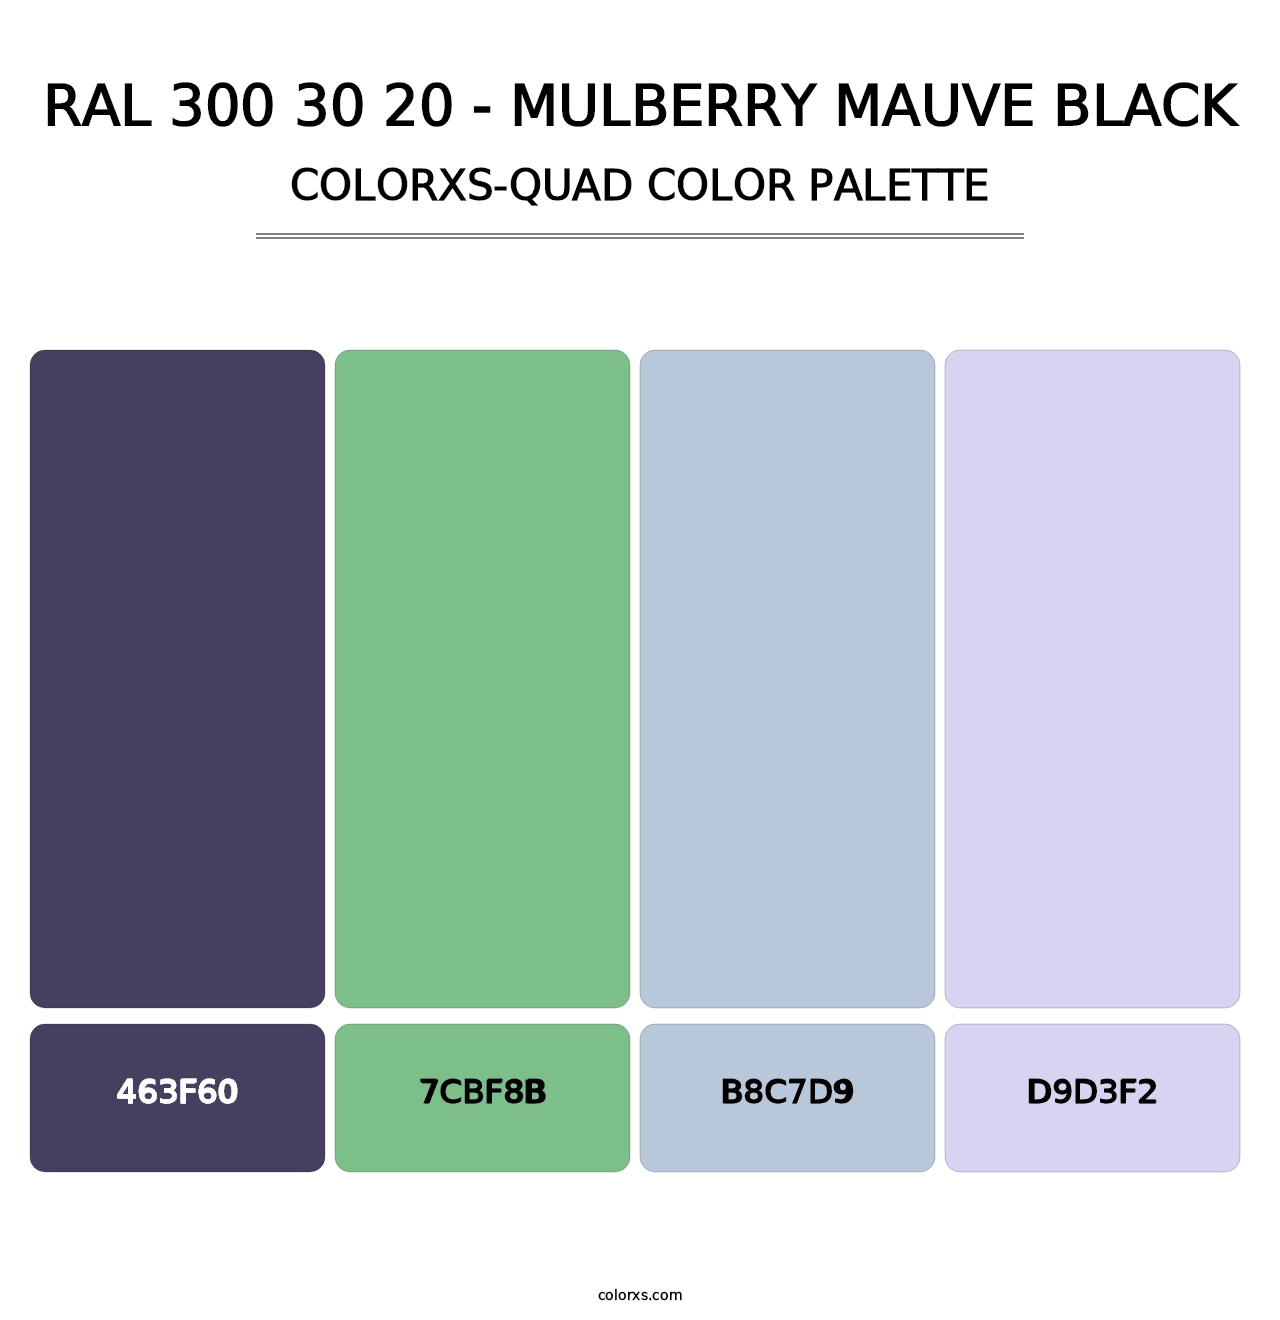 RAL 300 30 20 - Mulberry Mauve Black - Colorxs Quad Palette